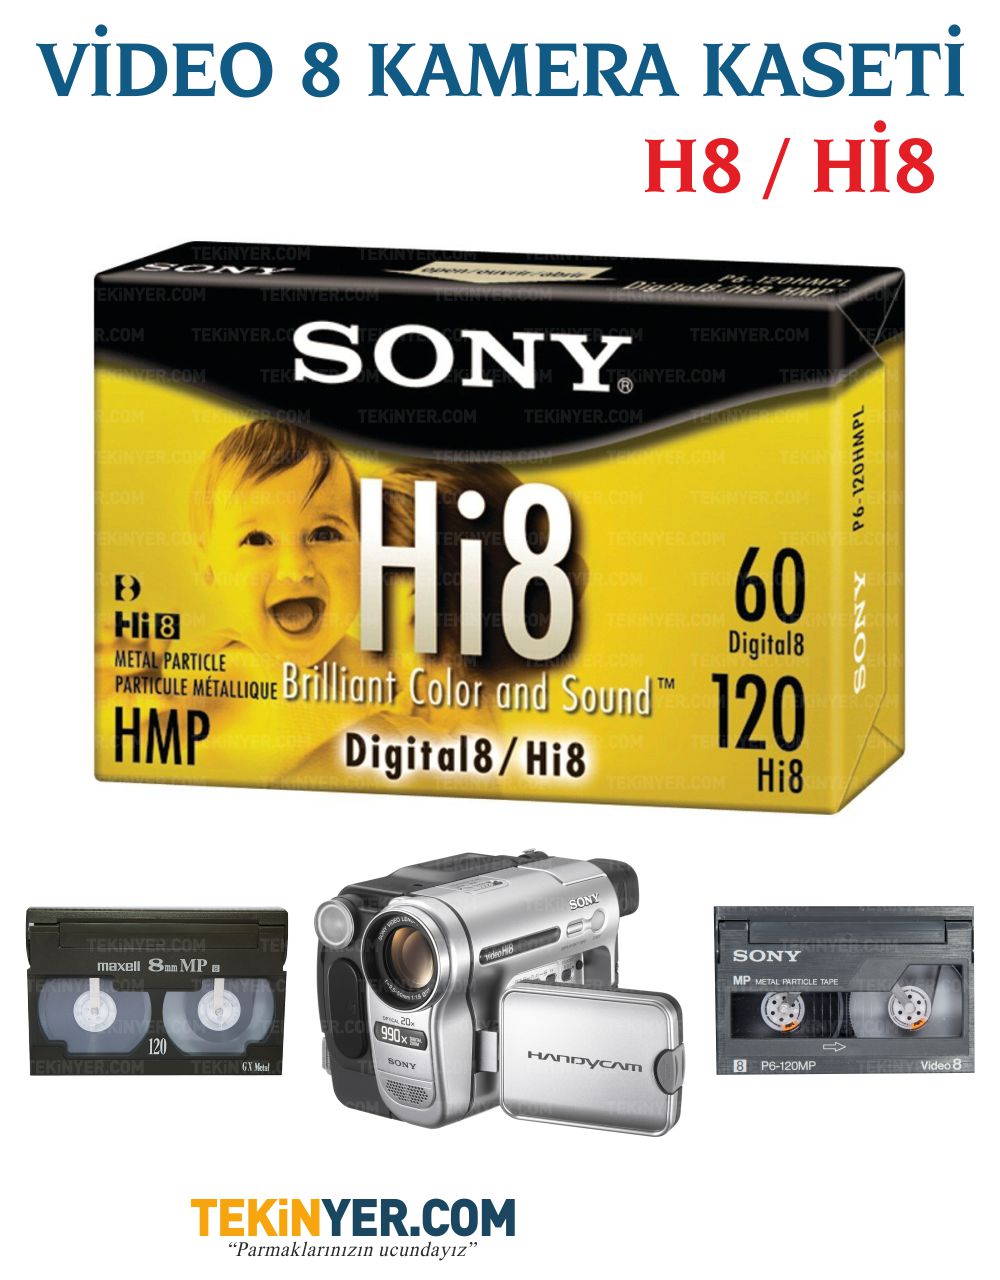 Video 8 Hi8 Analog-Digital Kasetten Kayıt Aktarım Eski Kaset Görüntü ve Ses Aktarımı